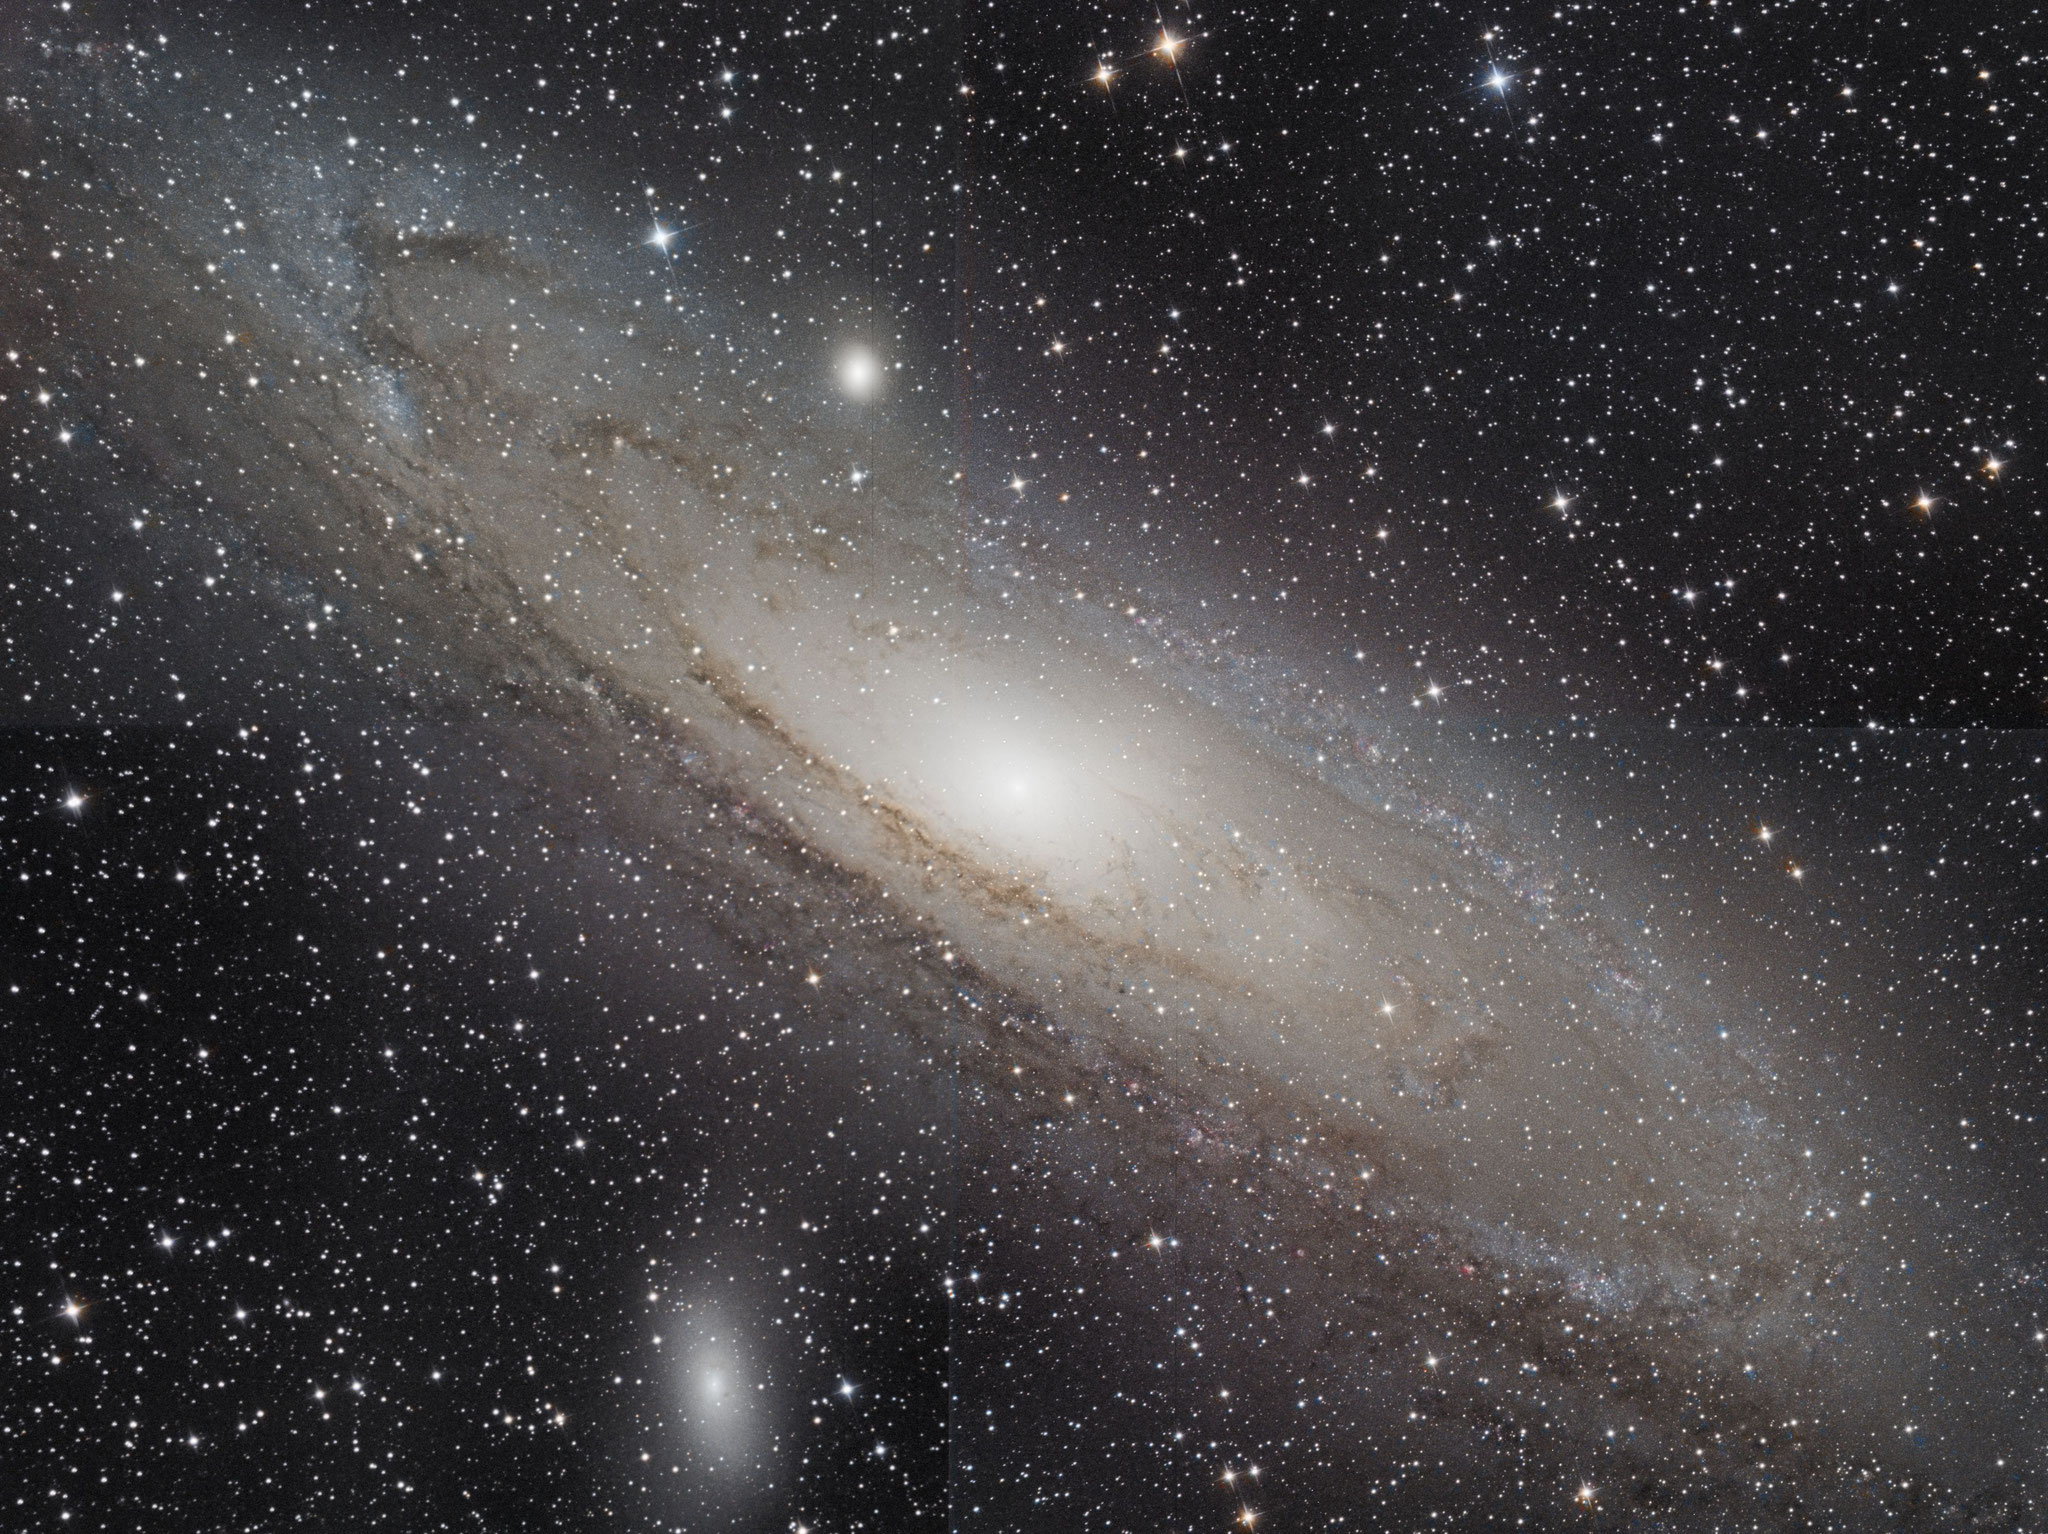 M31, mosaïque de 4 images, Ha (7x10min), L (10x5 min), RVB (10x3 min chaque), 9 octobre 2016 Gilles